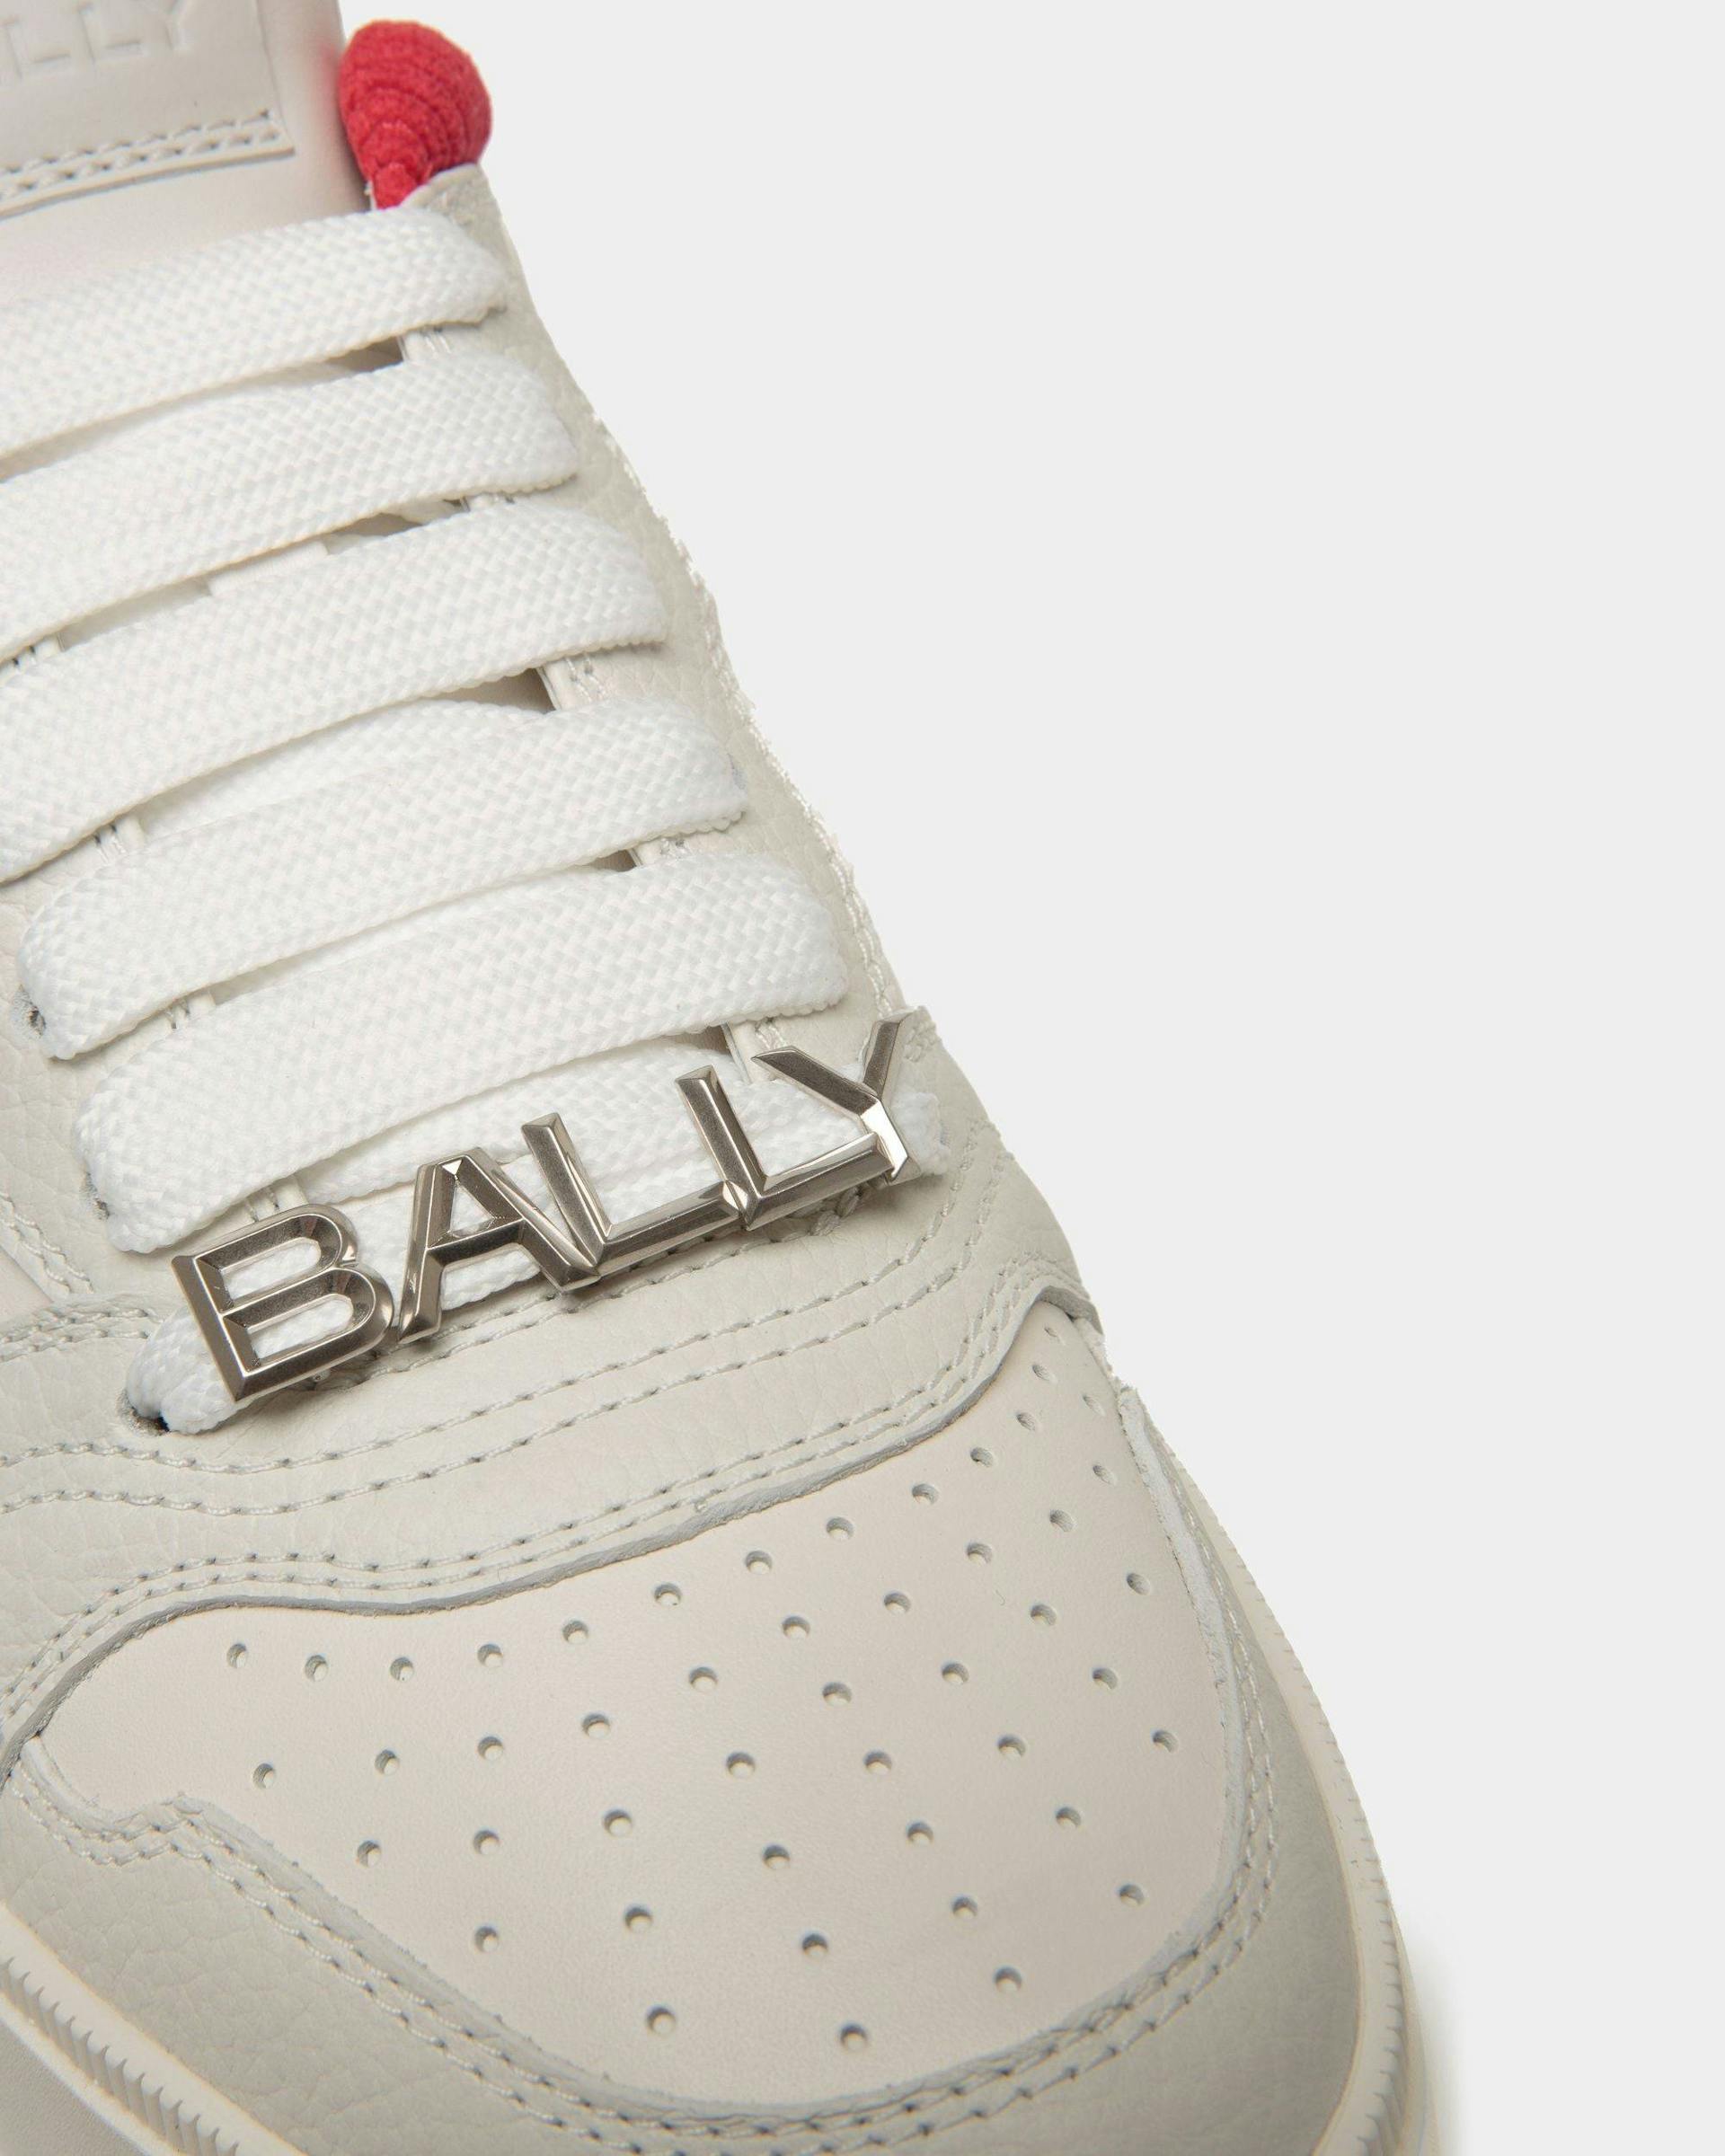 Men's Raise Sneaker in White Leather | Bally | Still Life Detail